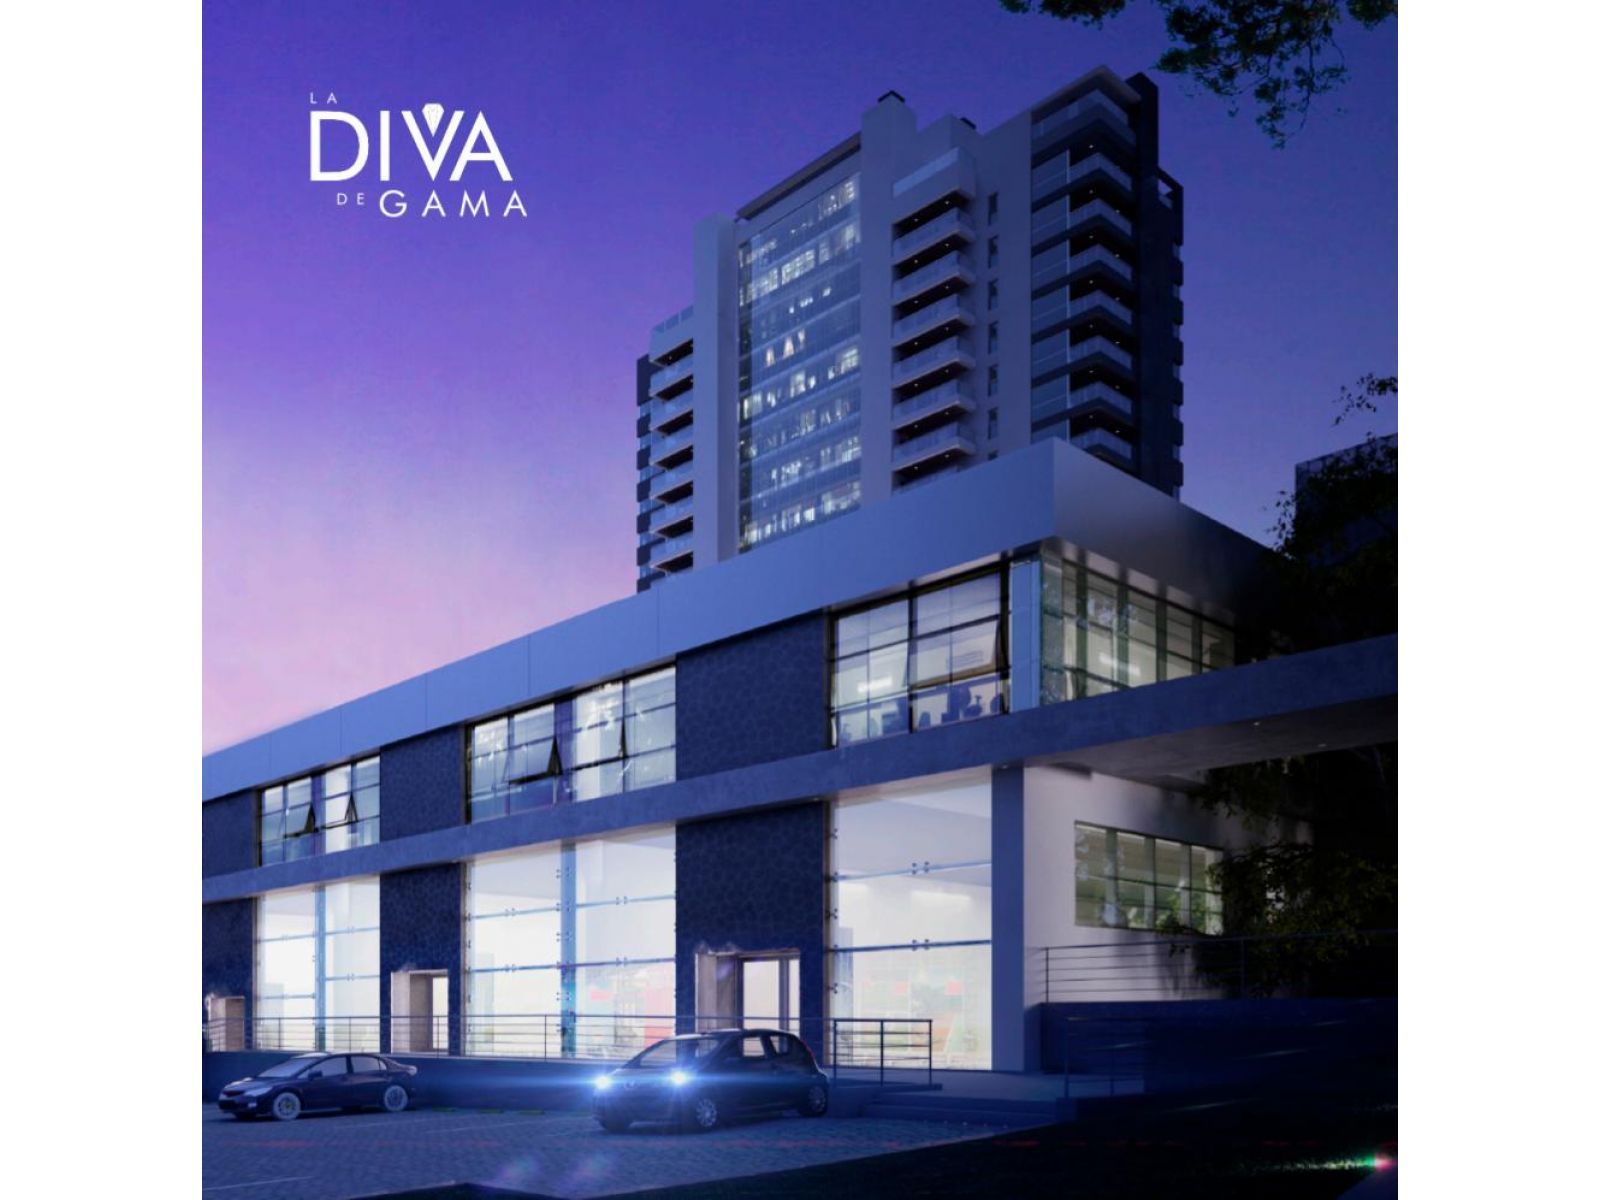 Venta Duplex 1 dorm - Torre La Diva Ciudad Gama